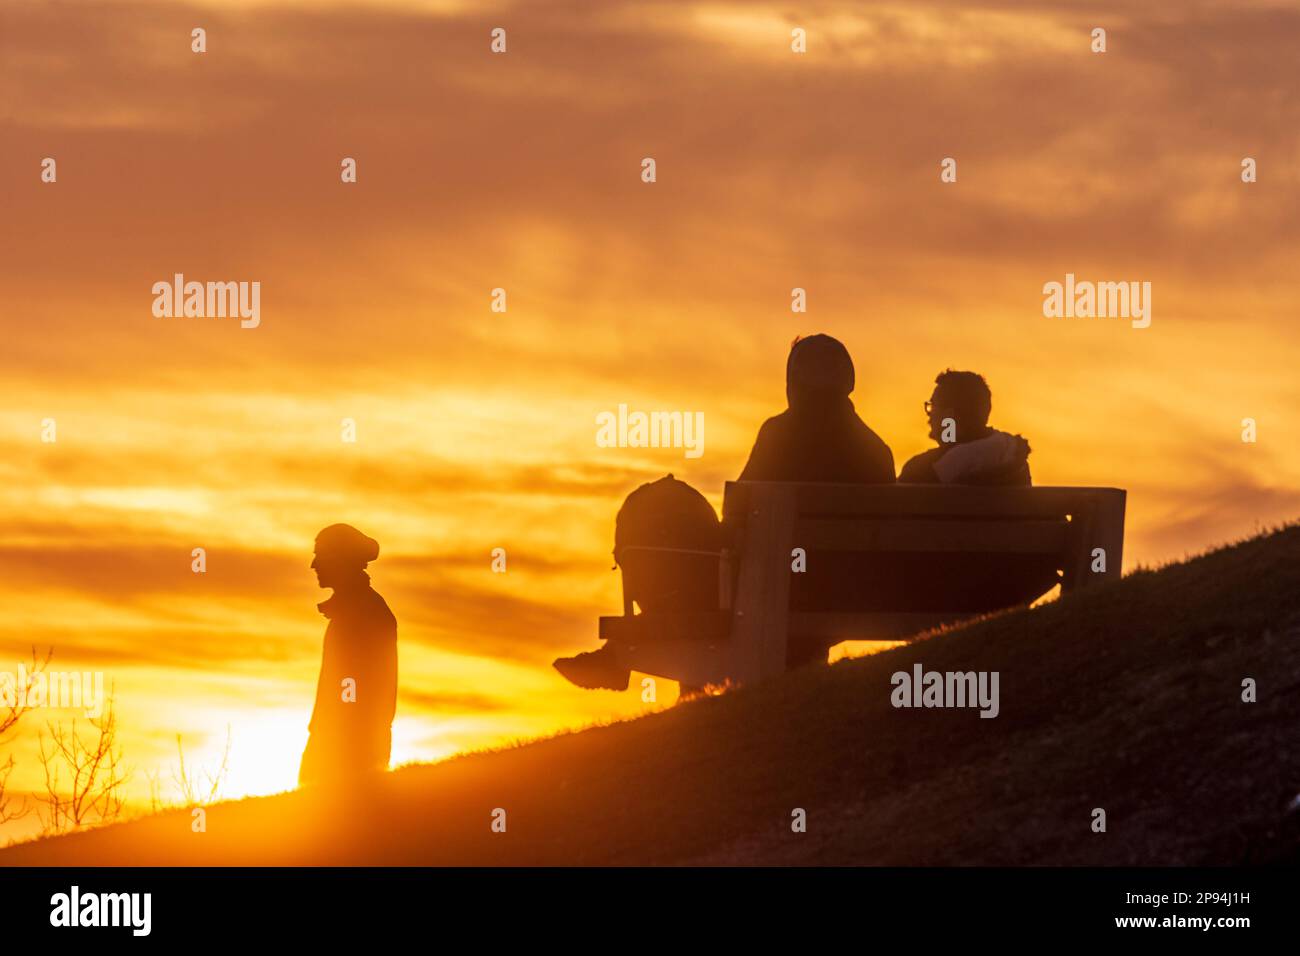 Vienna, tramonto ardente, 2 uomini seduti sulla panchina, persone come silhouette nel 19. Döbling, Vienna, Austria Foto Stock